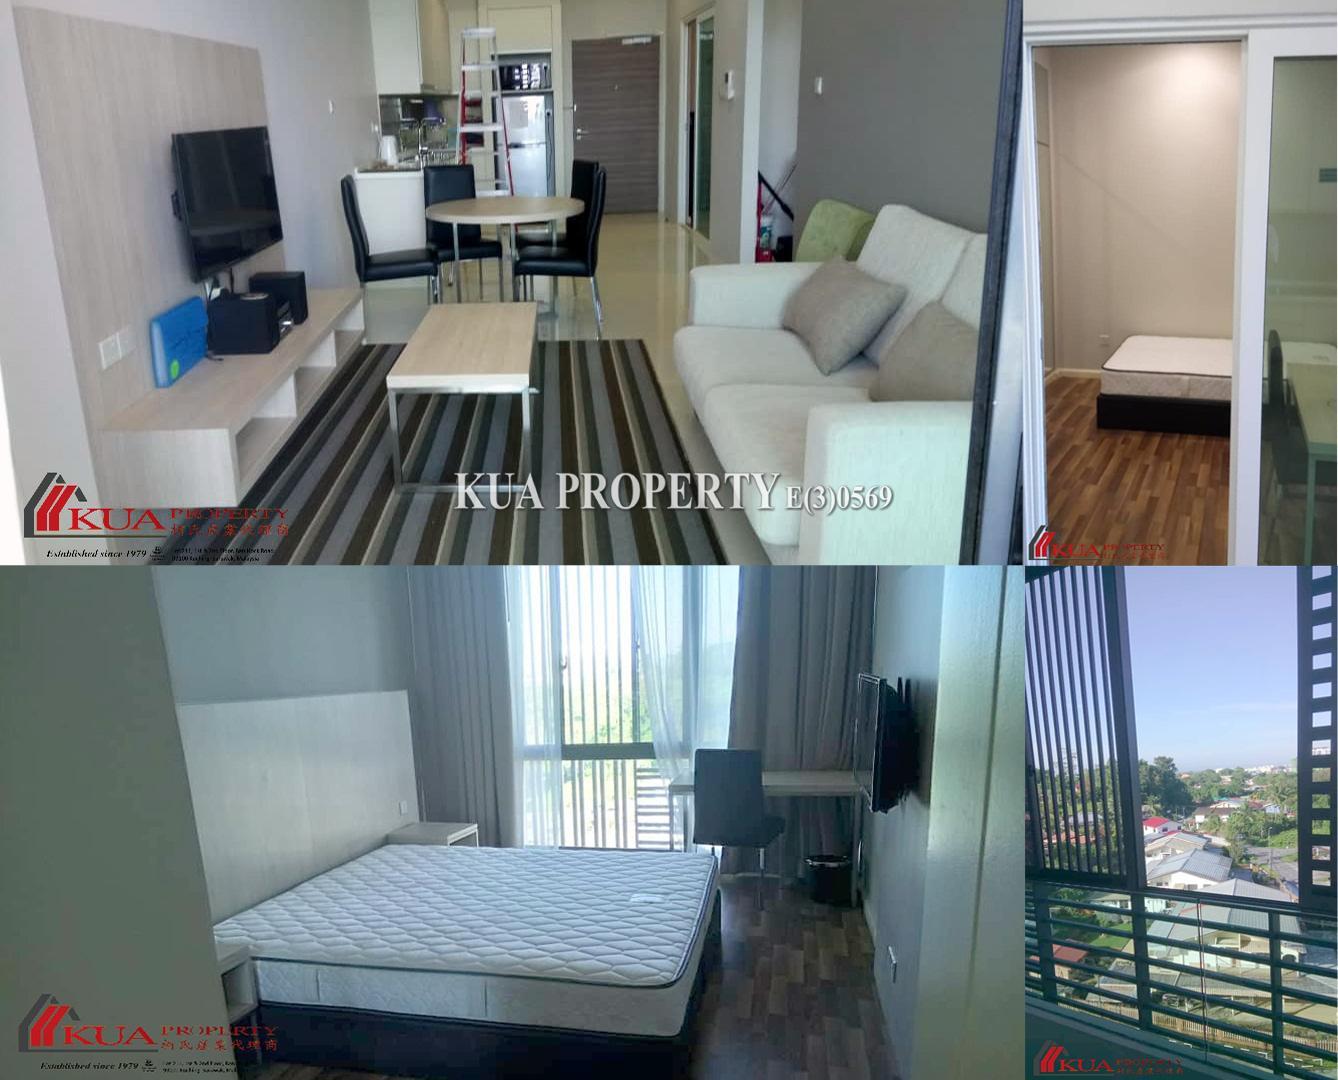 Uplands Service Suites Apartment For Rent! at Jalan Simpang Tiga, Kuching